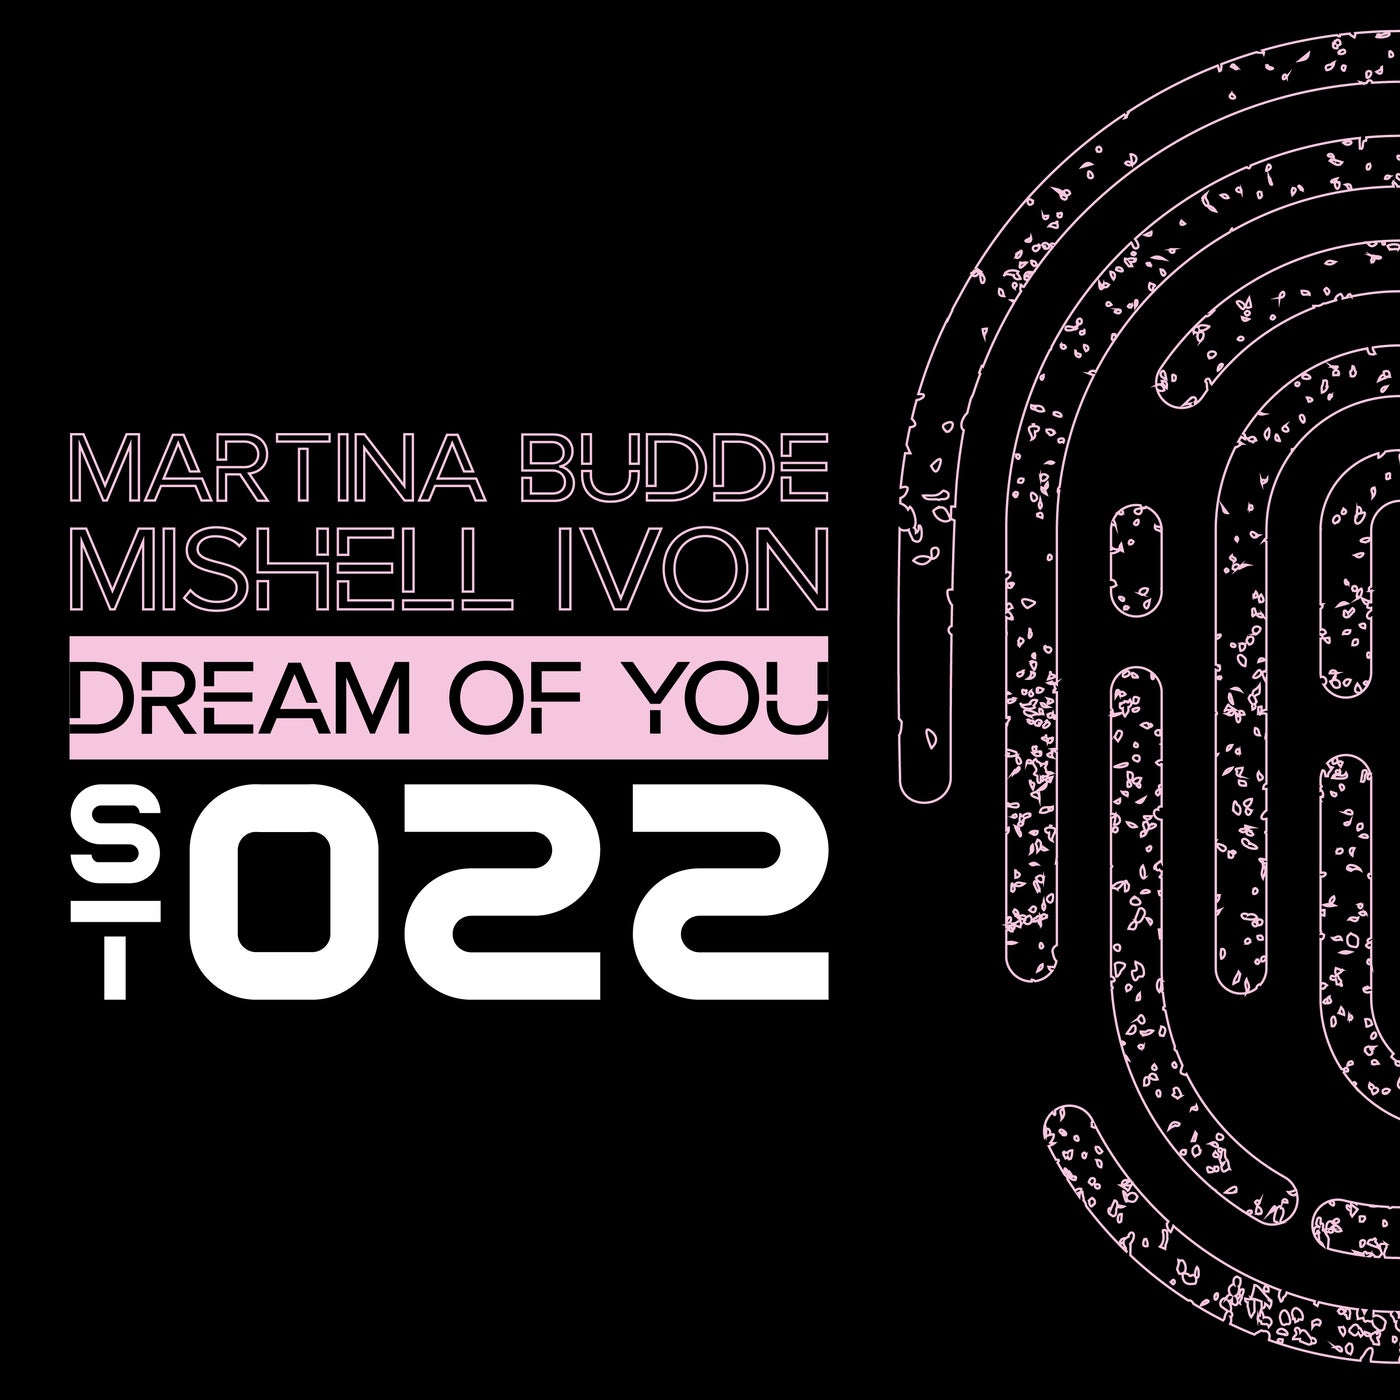 Martina Budde, Mishell Ivon - Dream of You [STR022]